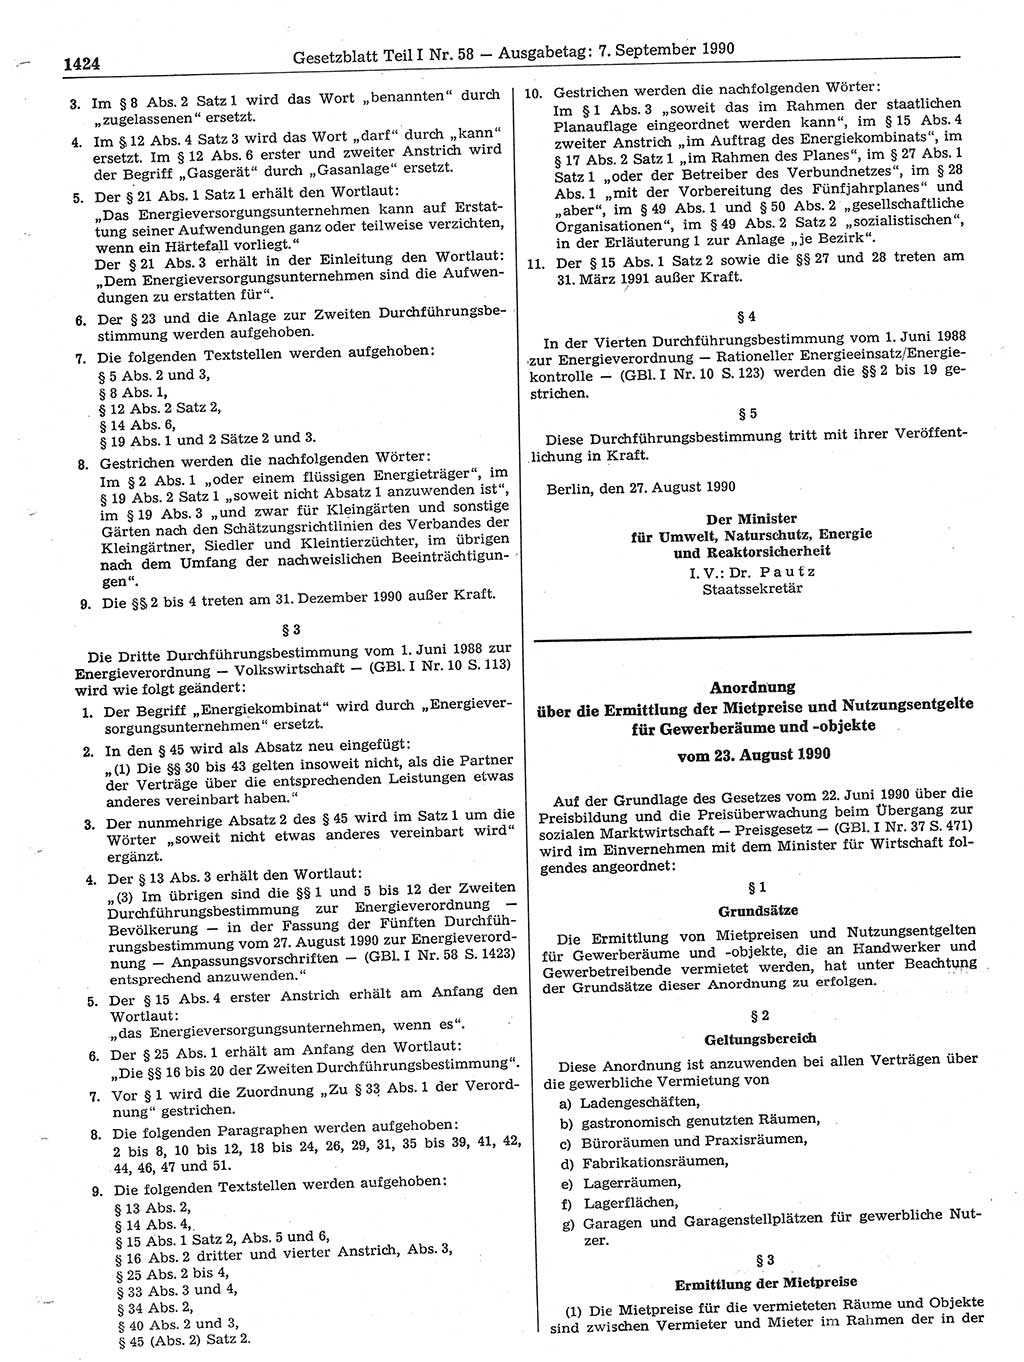 Gesetzblatt (GBl.) der Deutschen Demokratischen Republik (DDR) Teil Ⅰ 1990, Seite 1424 (GBl. DDR Ⅰ 1990, S. 1424)